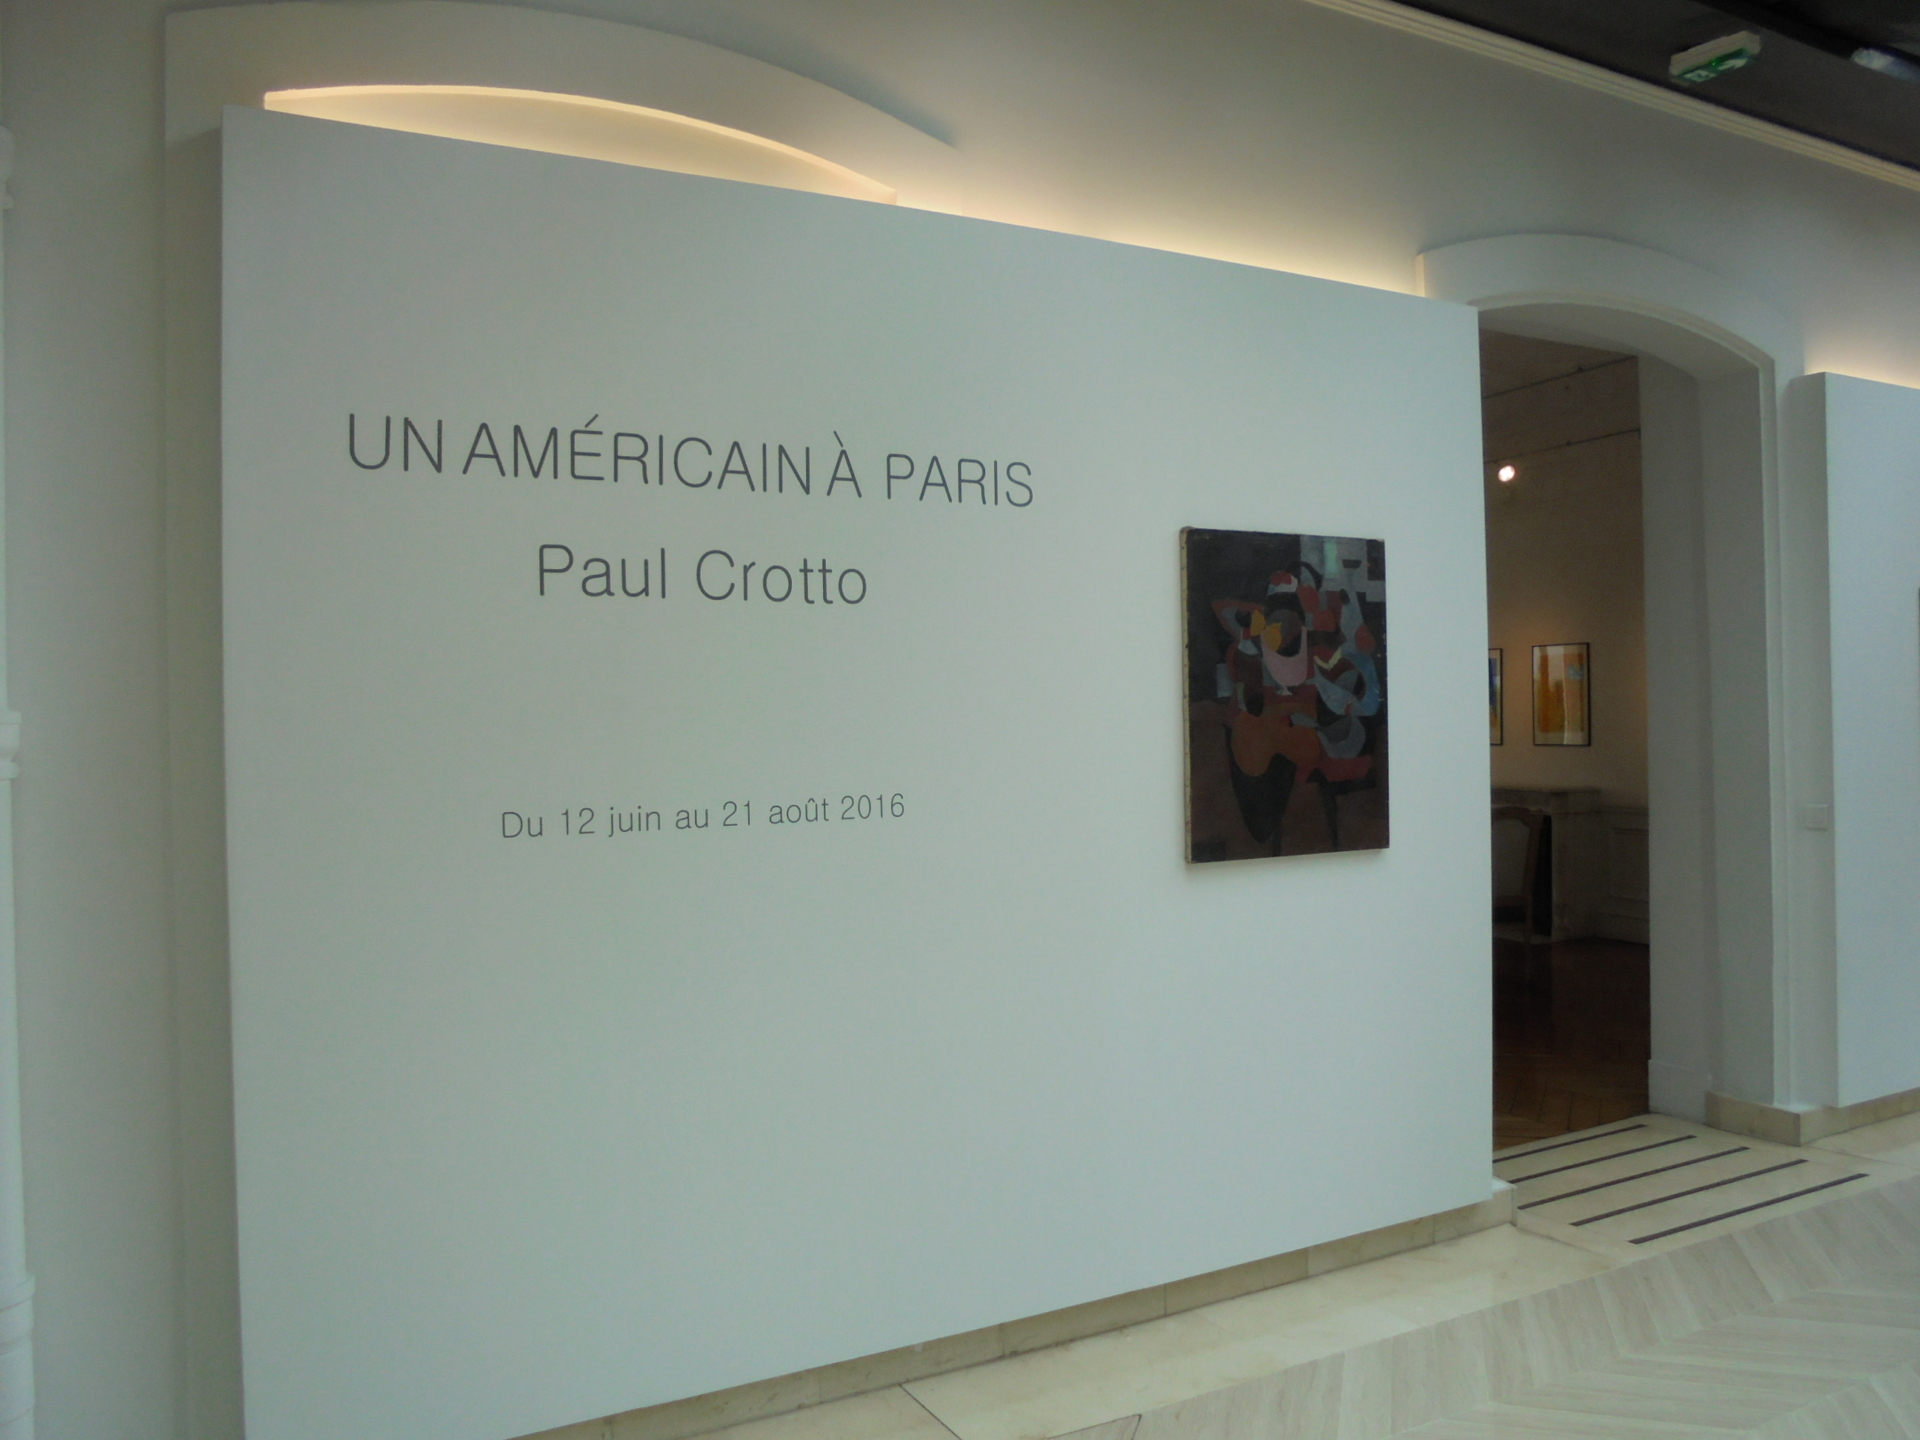 Vues de l'exposition, Un américain à Paris